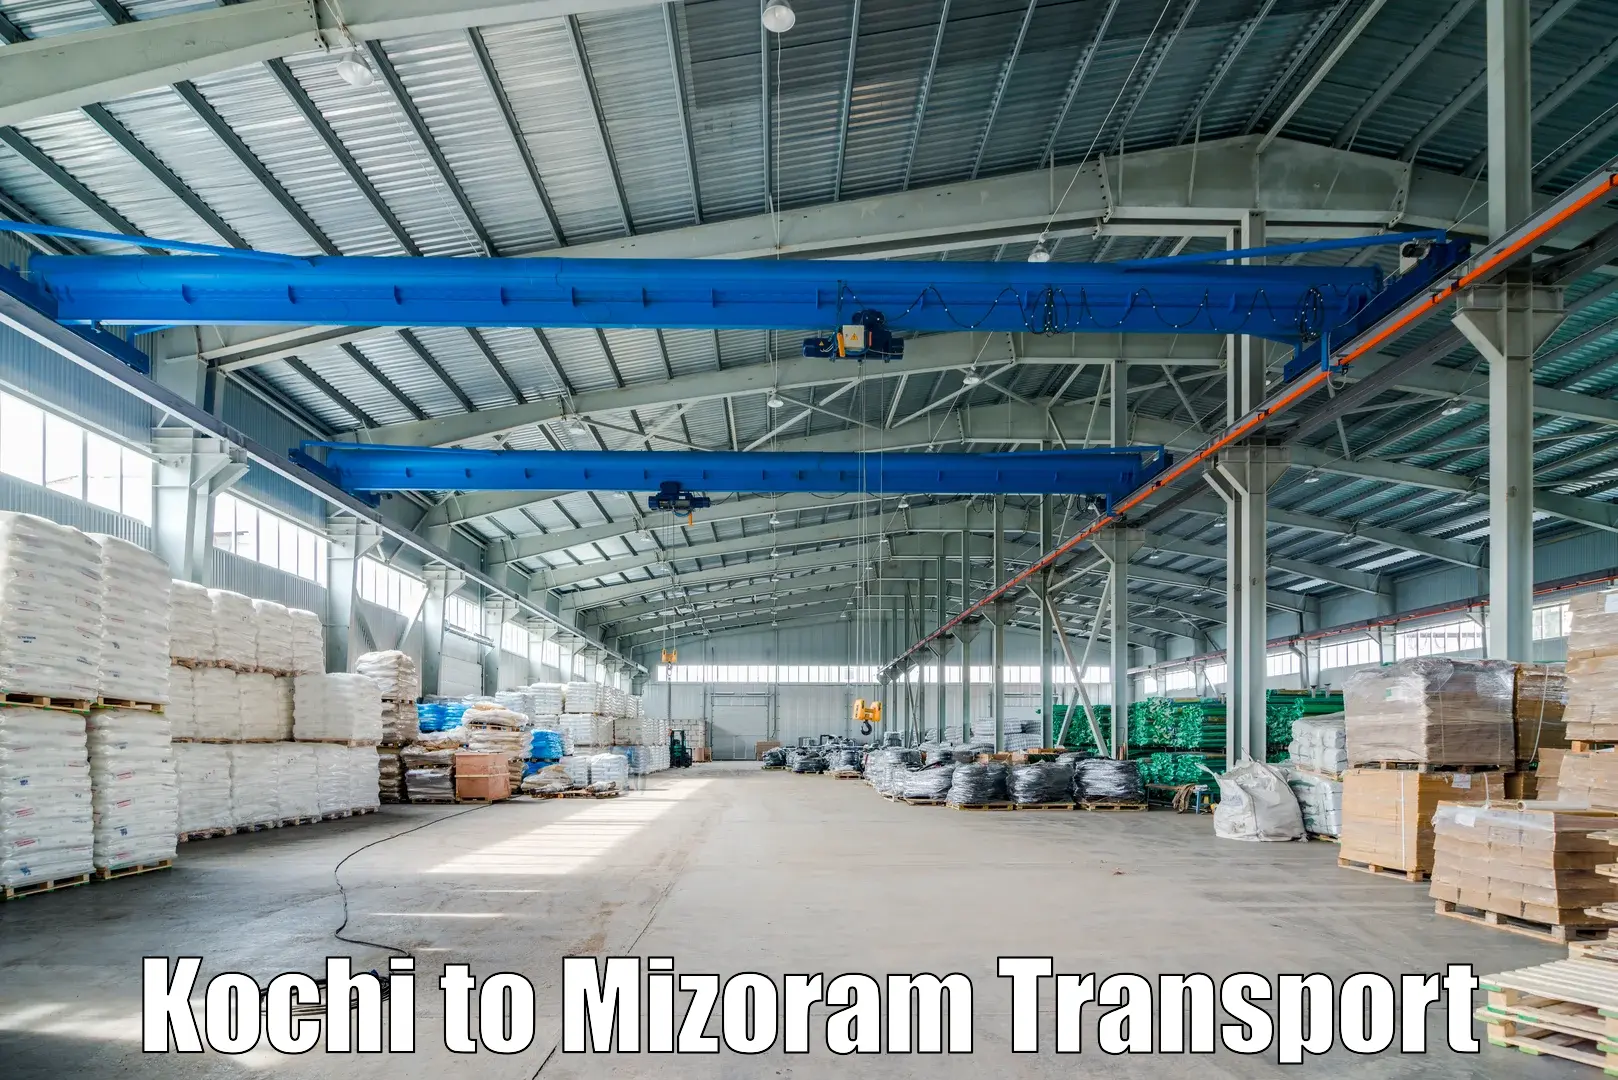 Nearby transport service Kochi to Mizoram